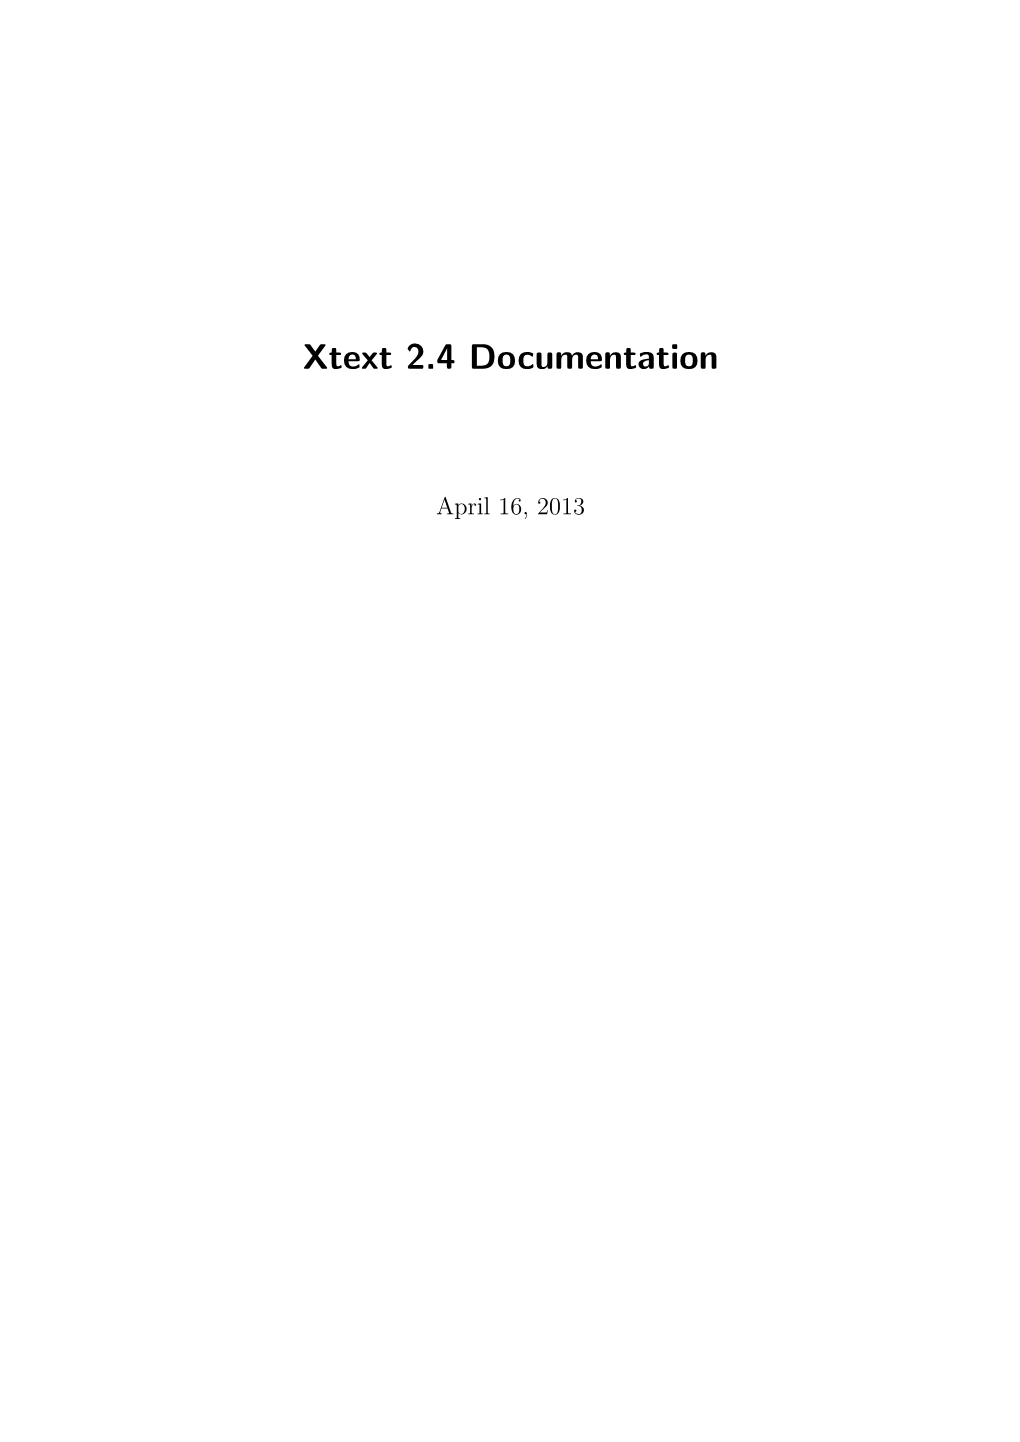 Xtext 2.4 Documentation